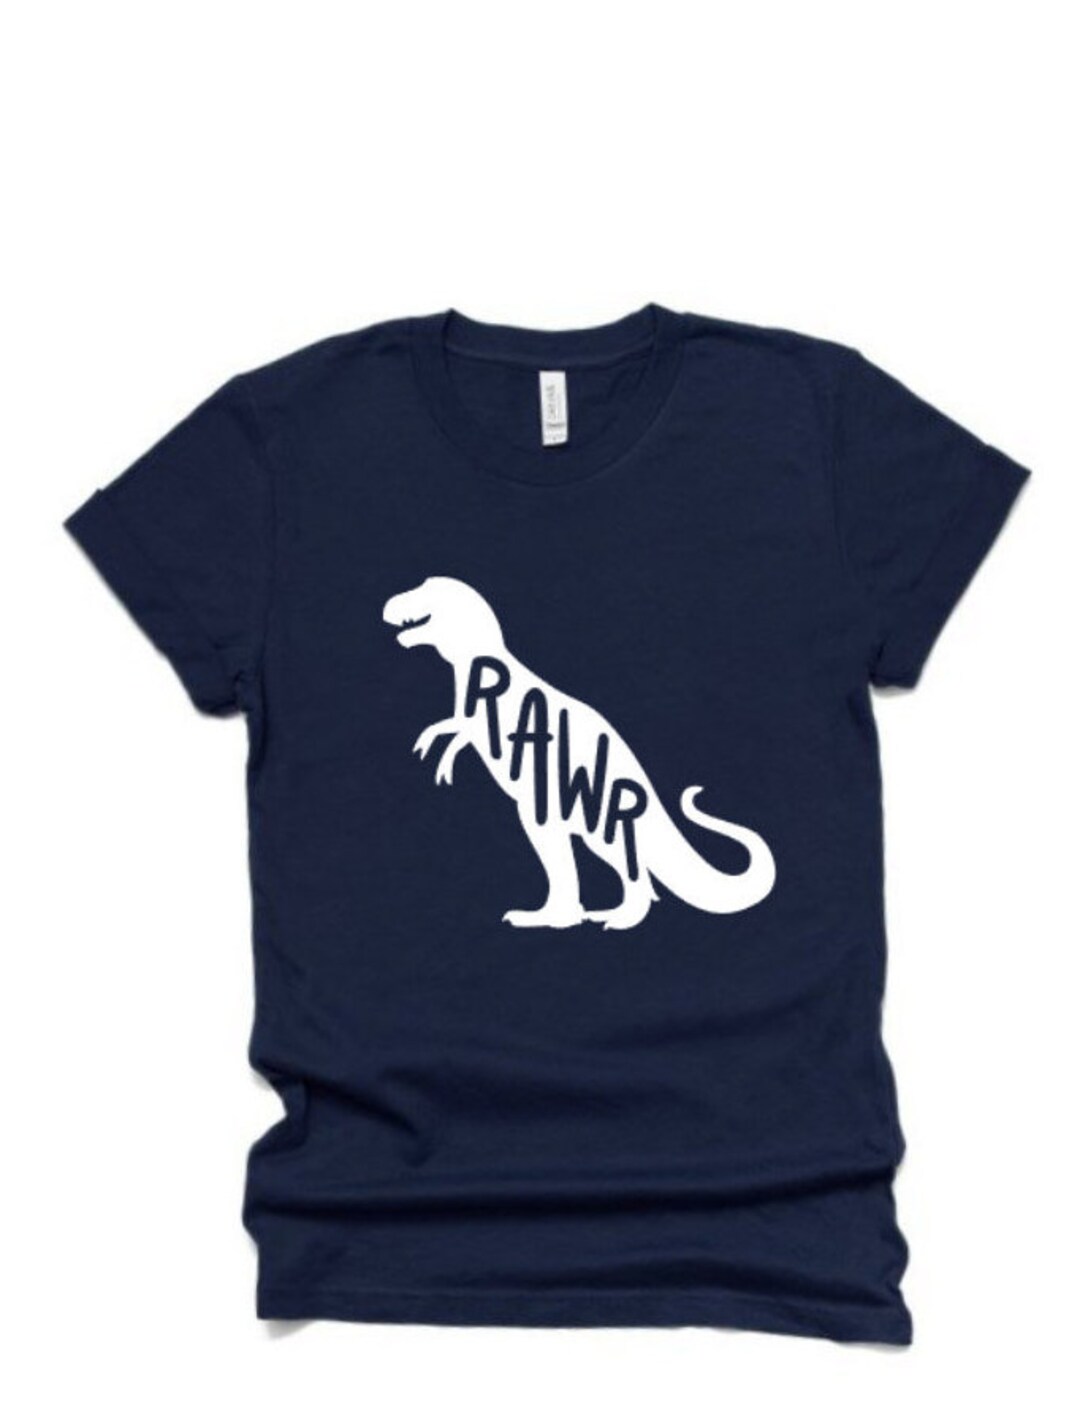 Rawr Dinosaur Shirt Dinosaur Shirt Bella Canvas Tshirt - Etsy